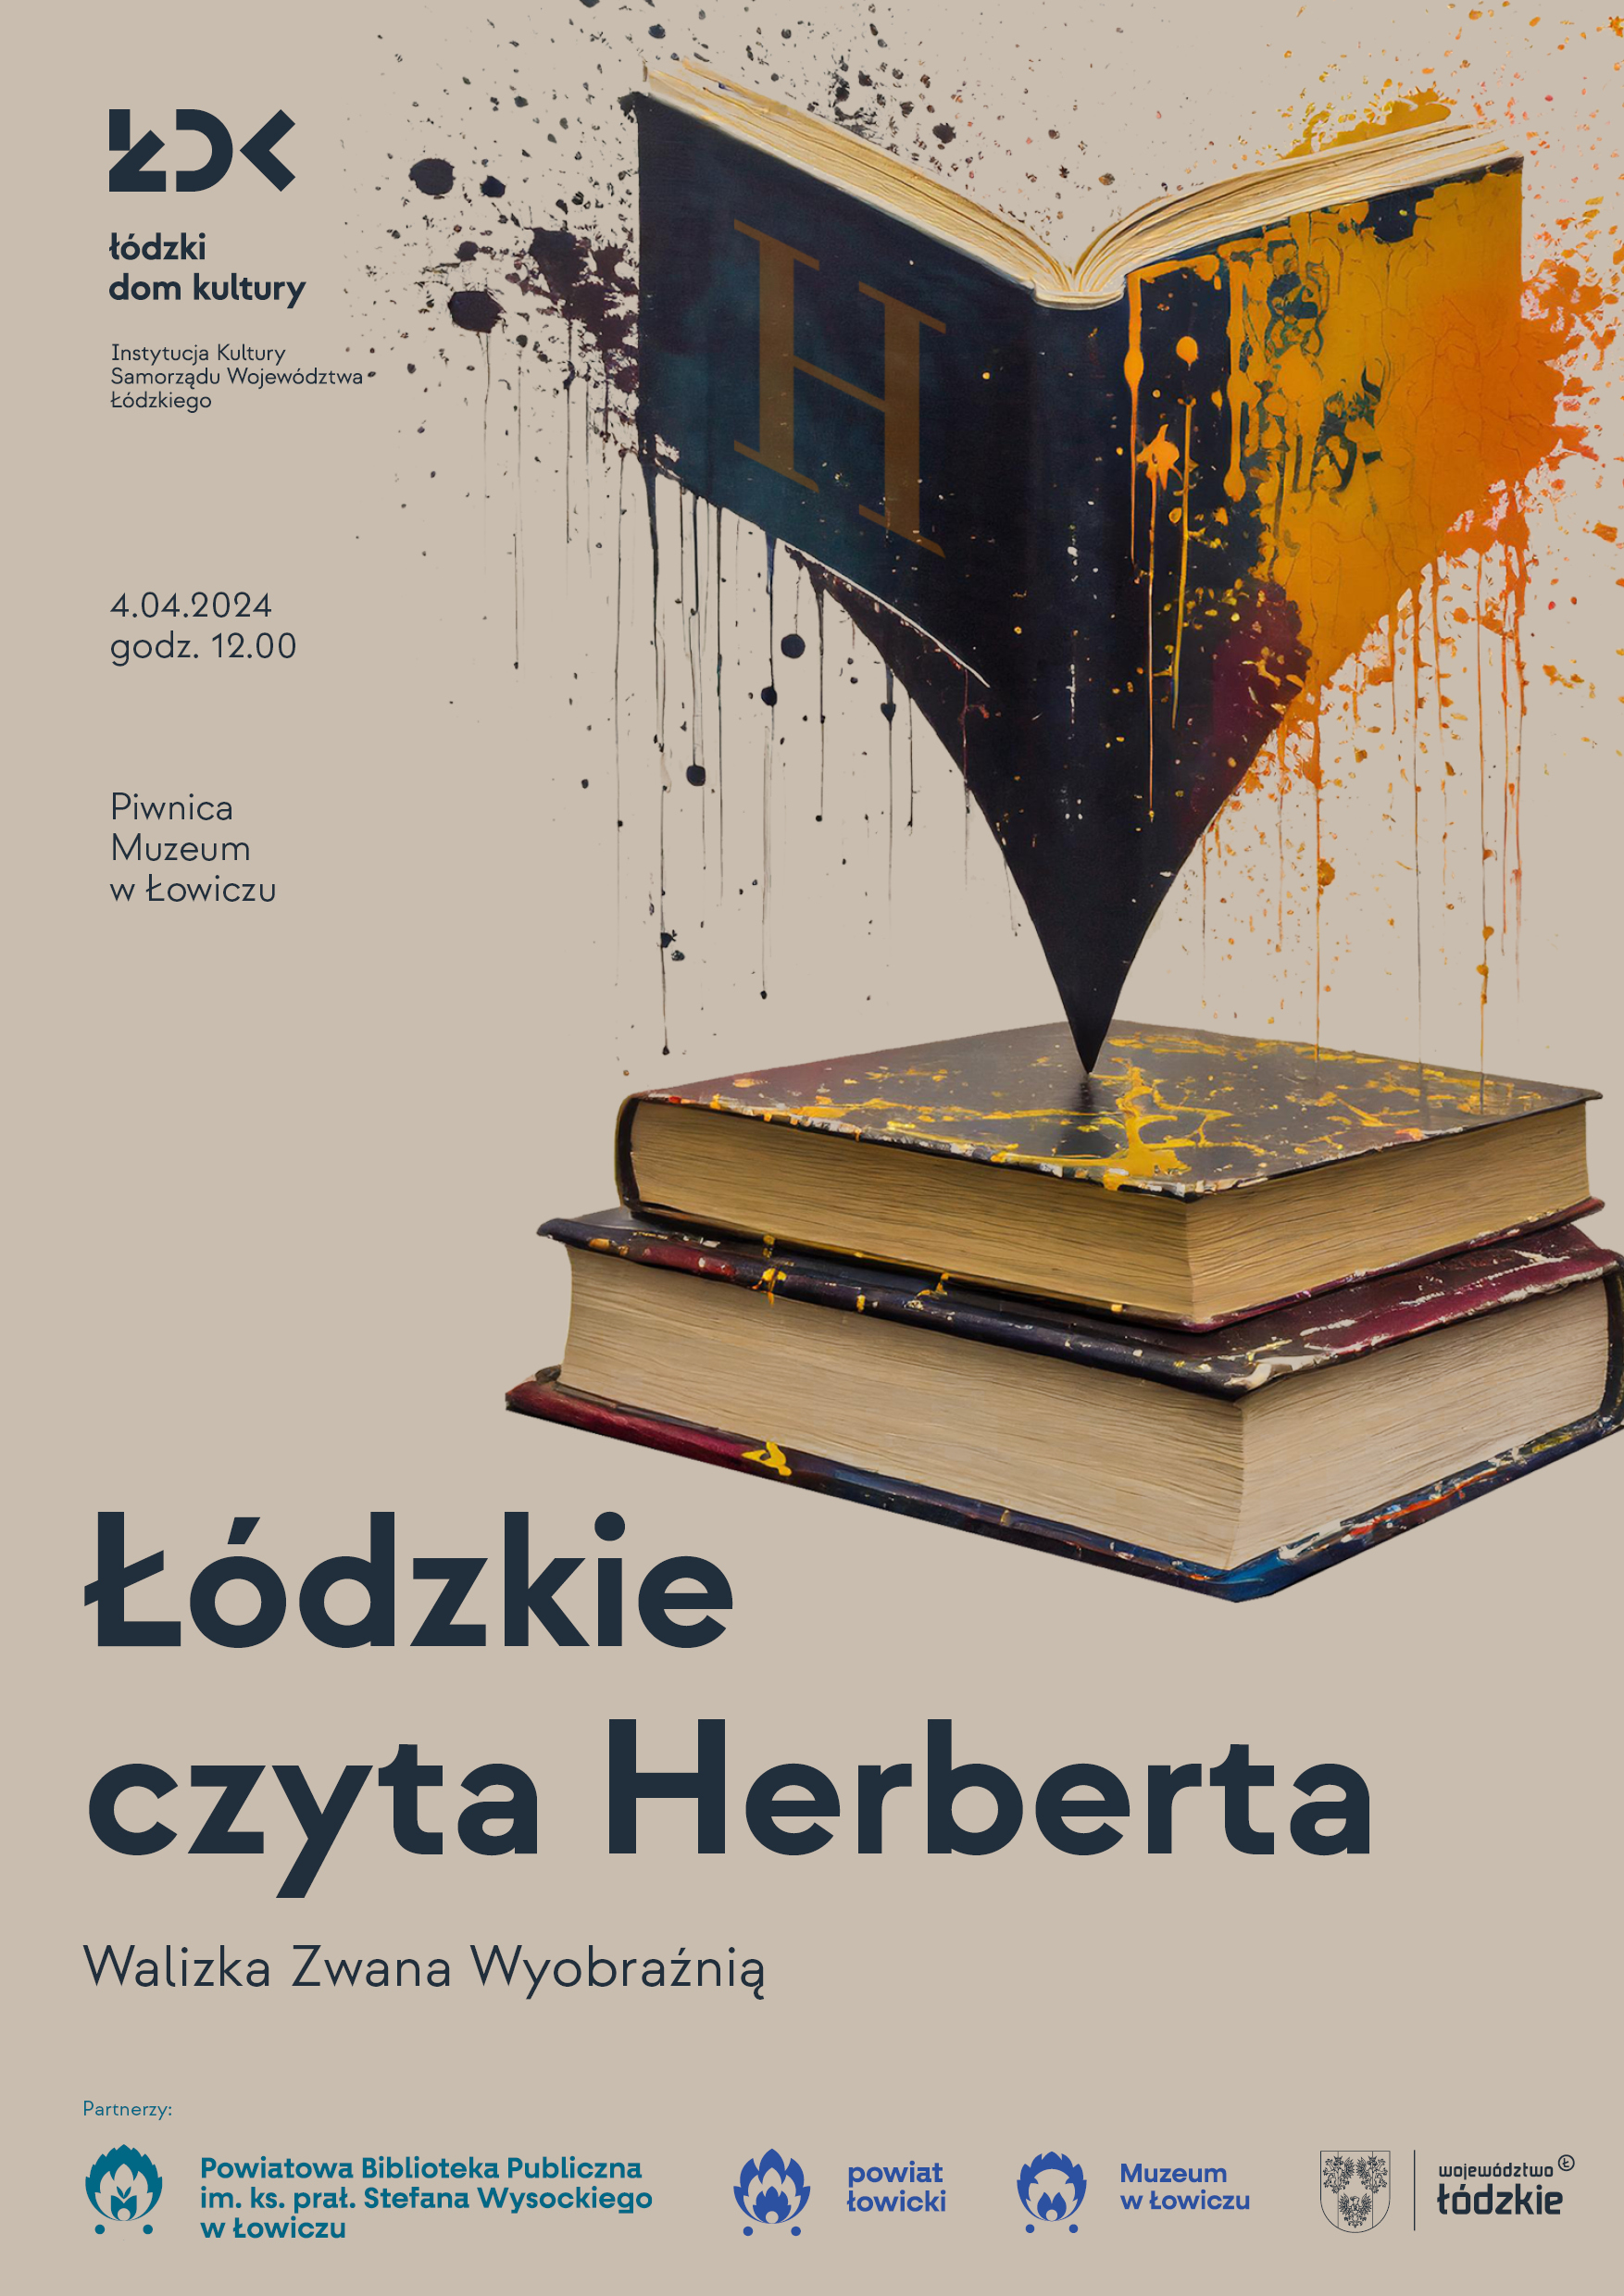 Plakat promujący wydarzenie Łódzkie czyta Herberta